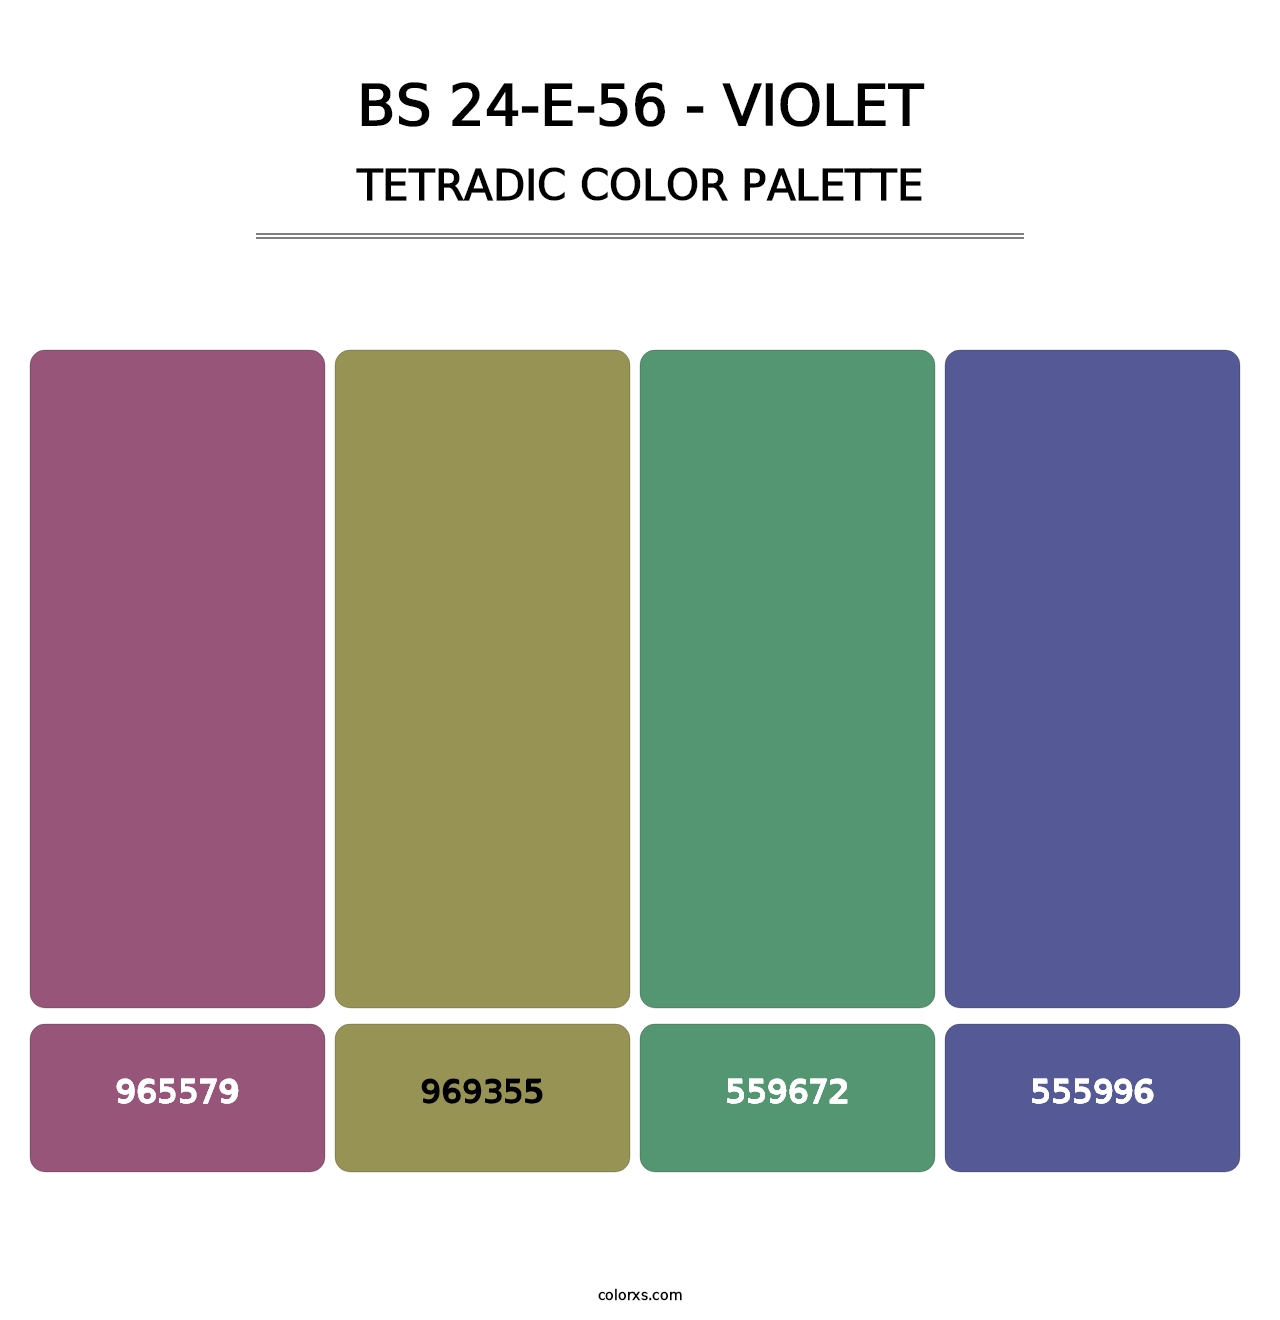 BS 24-E-56 - Violet - Tetradic Color Palette